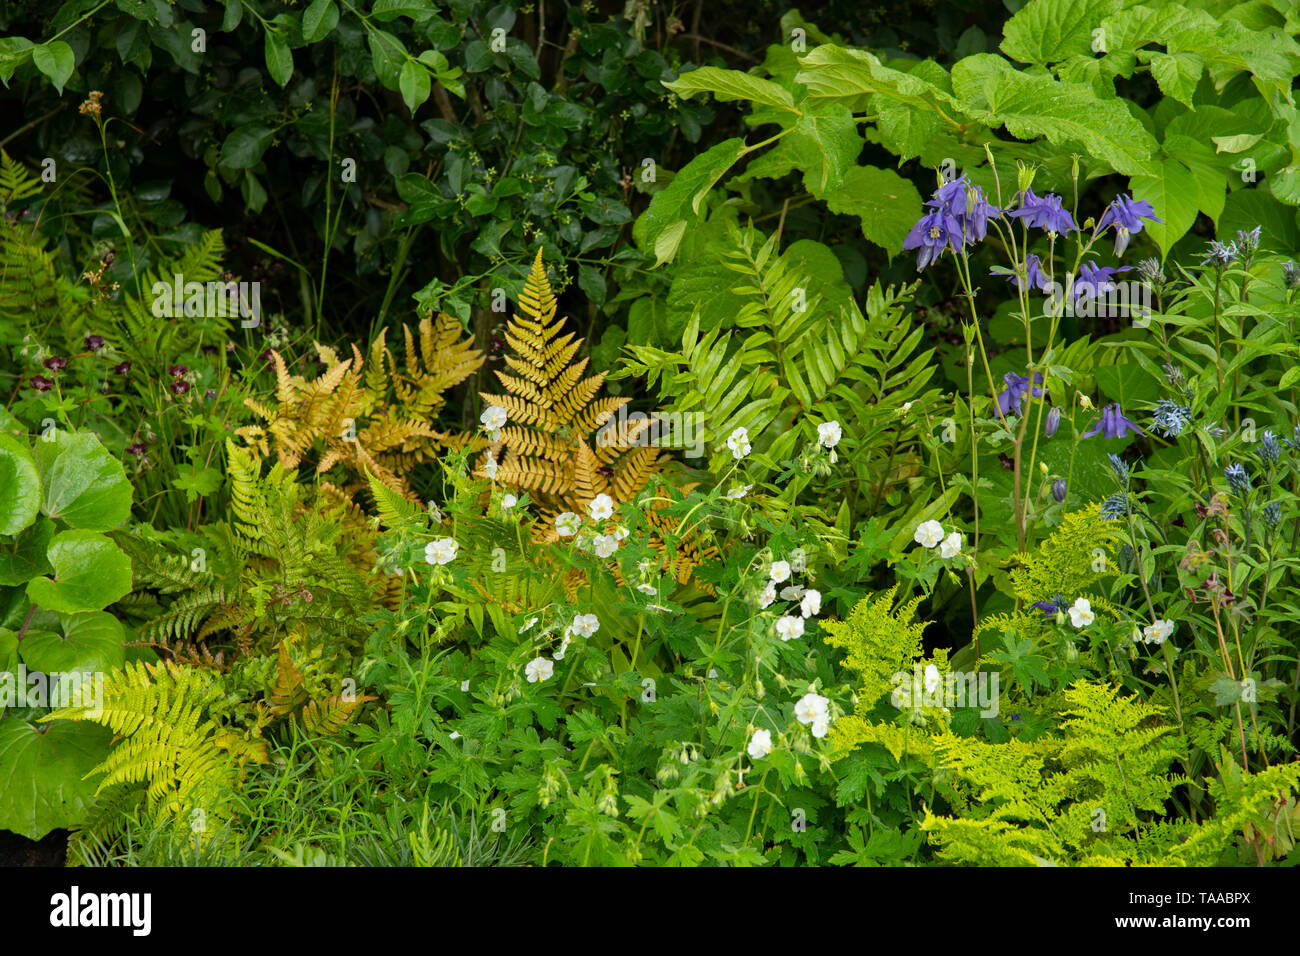 Un close-up di piante della resilienza giardino disegnato da Sarah Eberle al RHS Chelsea Flower Show 2019. Foto Stock